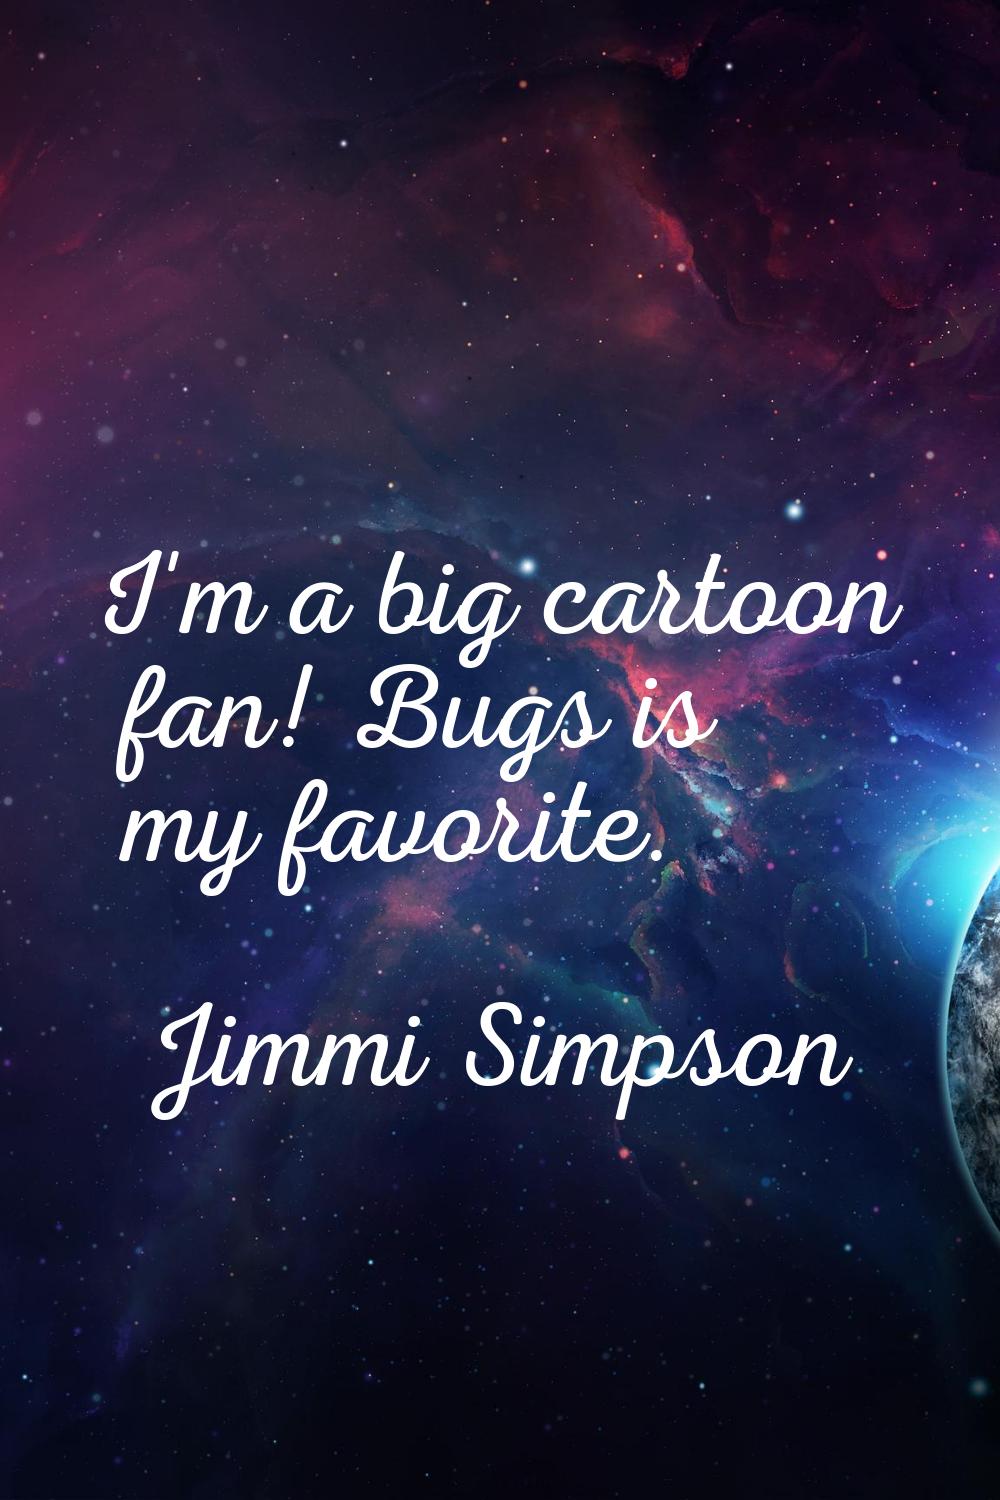 I'm a big cartoon fan! Bugs is my favorite.